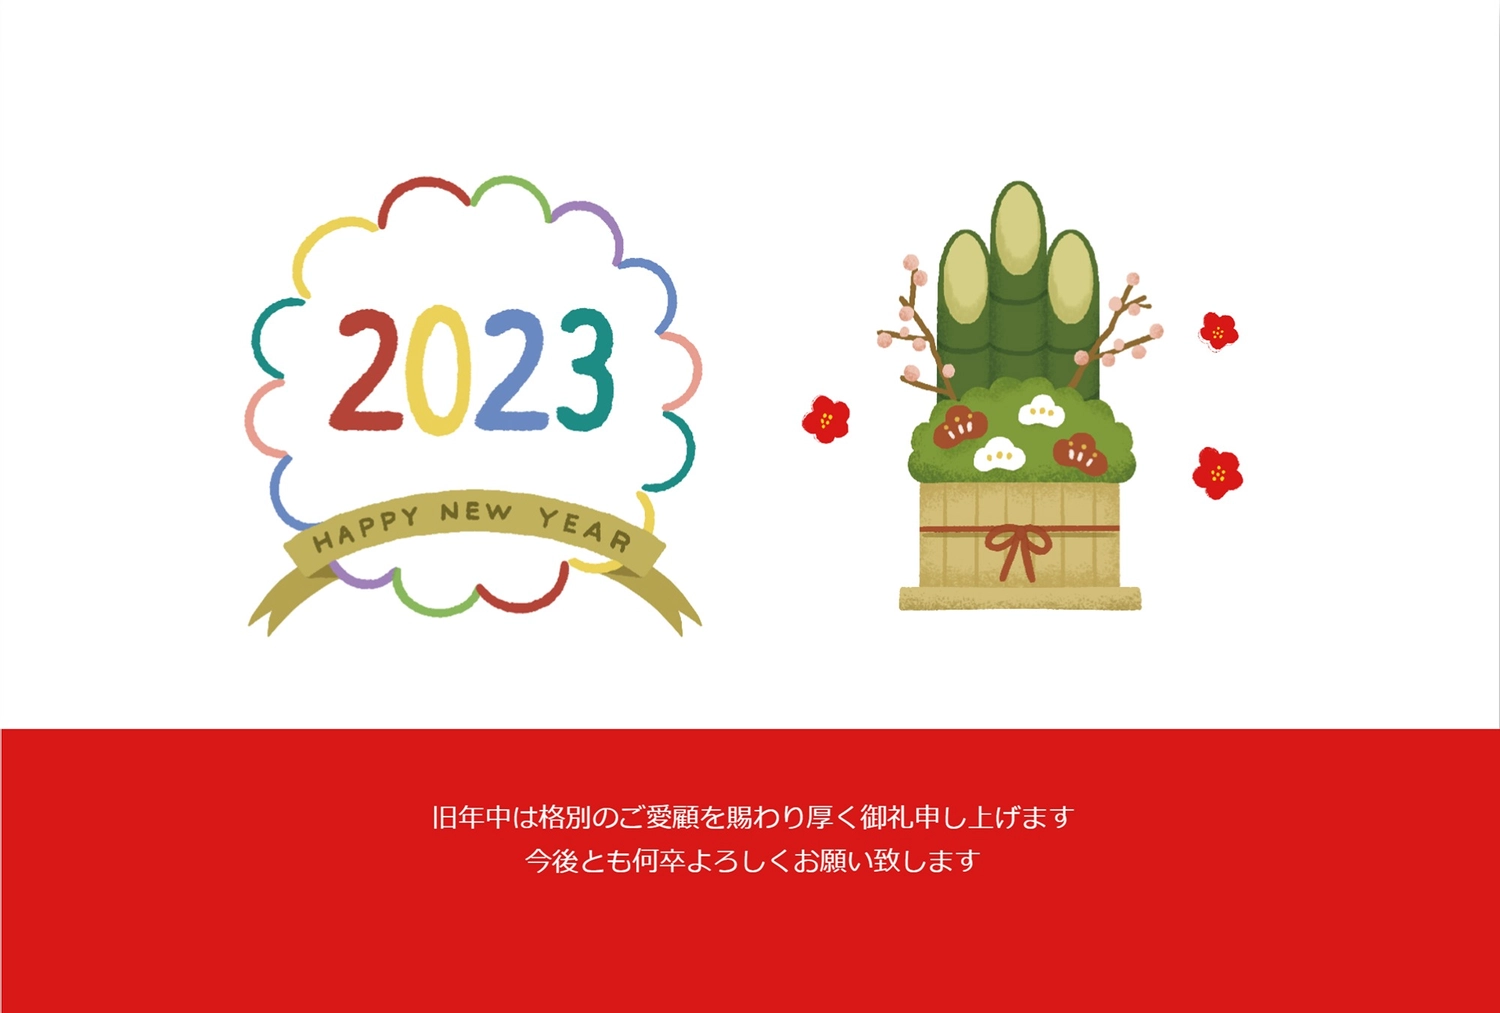 門松の年賀状, White background, margin, Happy New Year, New Year Card template